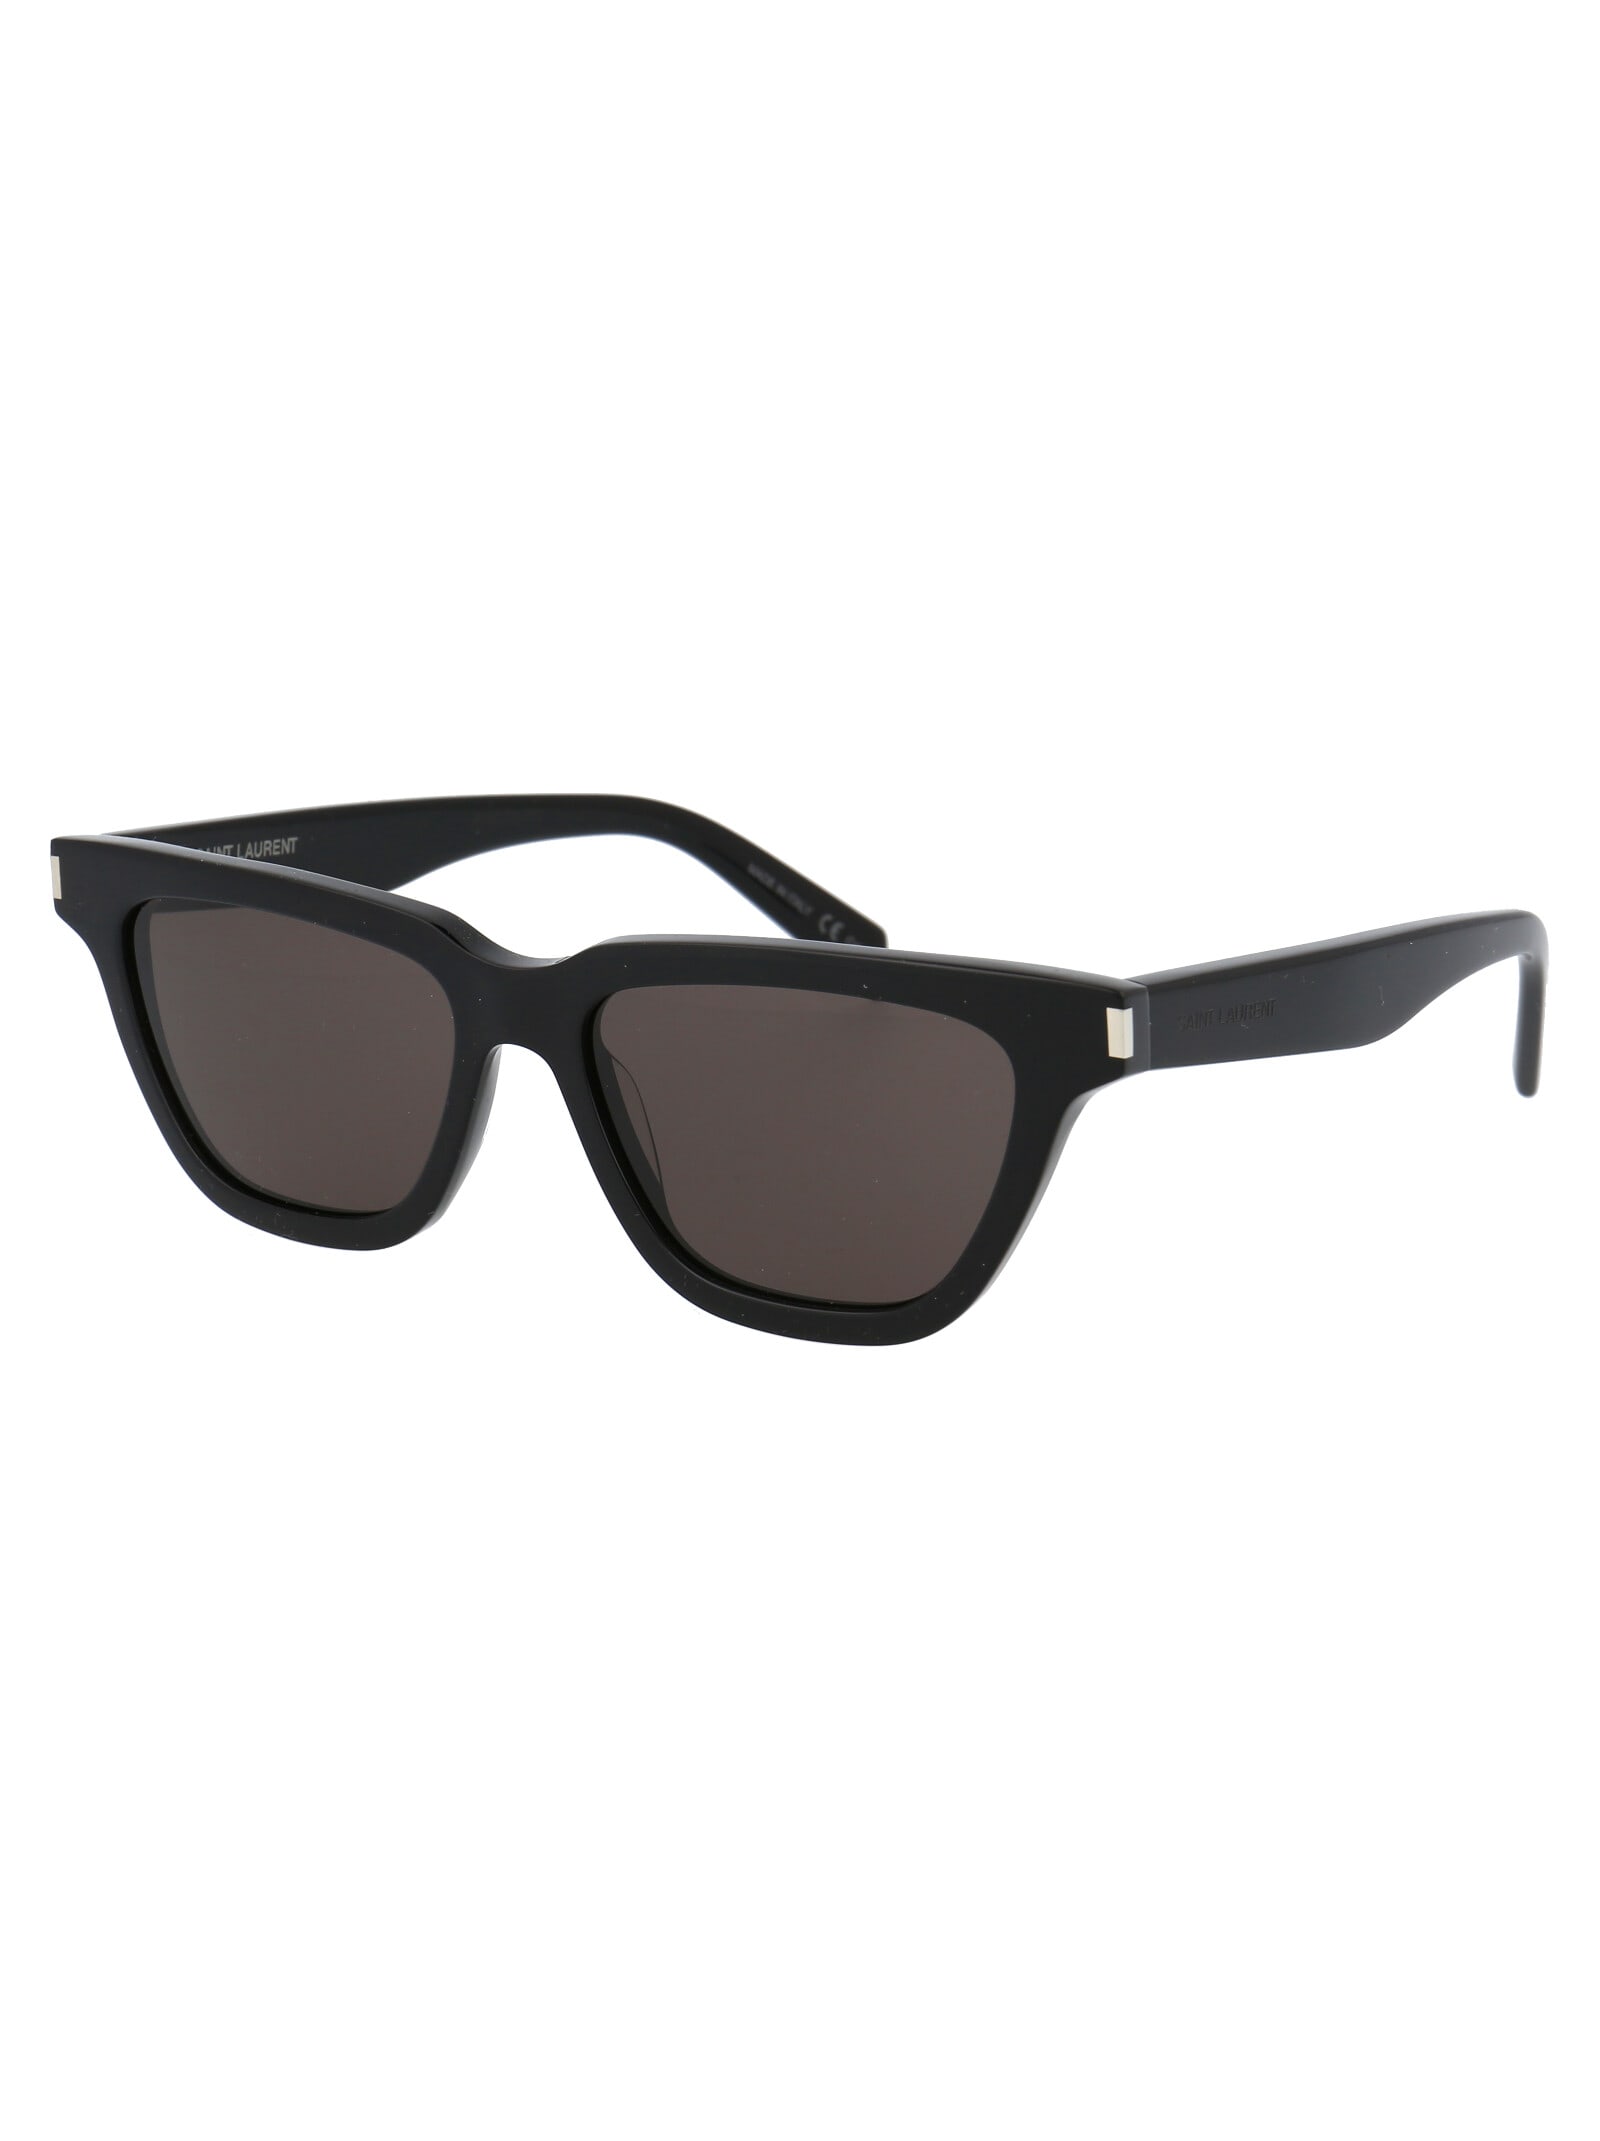 Saint Laurent® SL 462 SULPICE Sunglasses - EuroOptica™ NYC